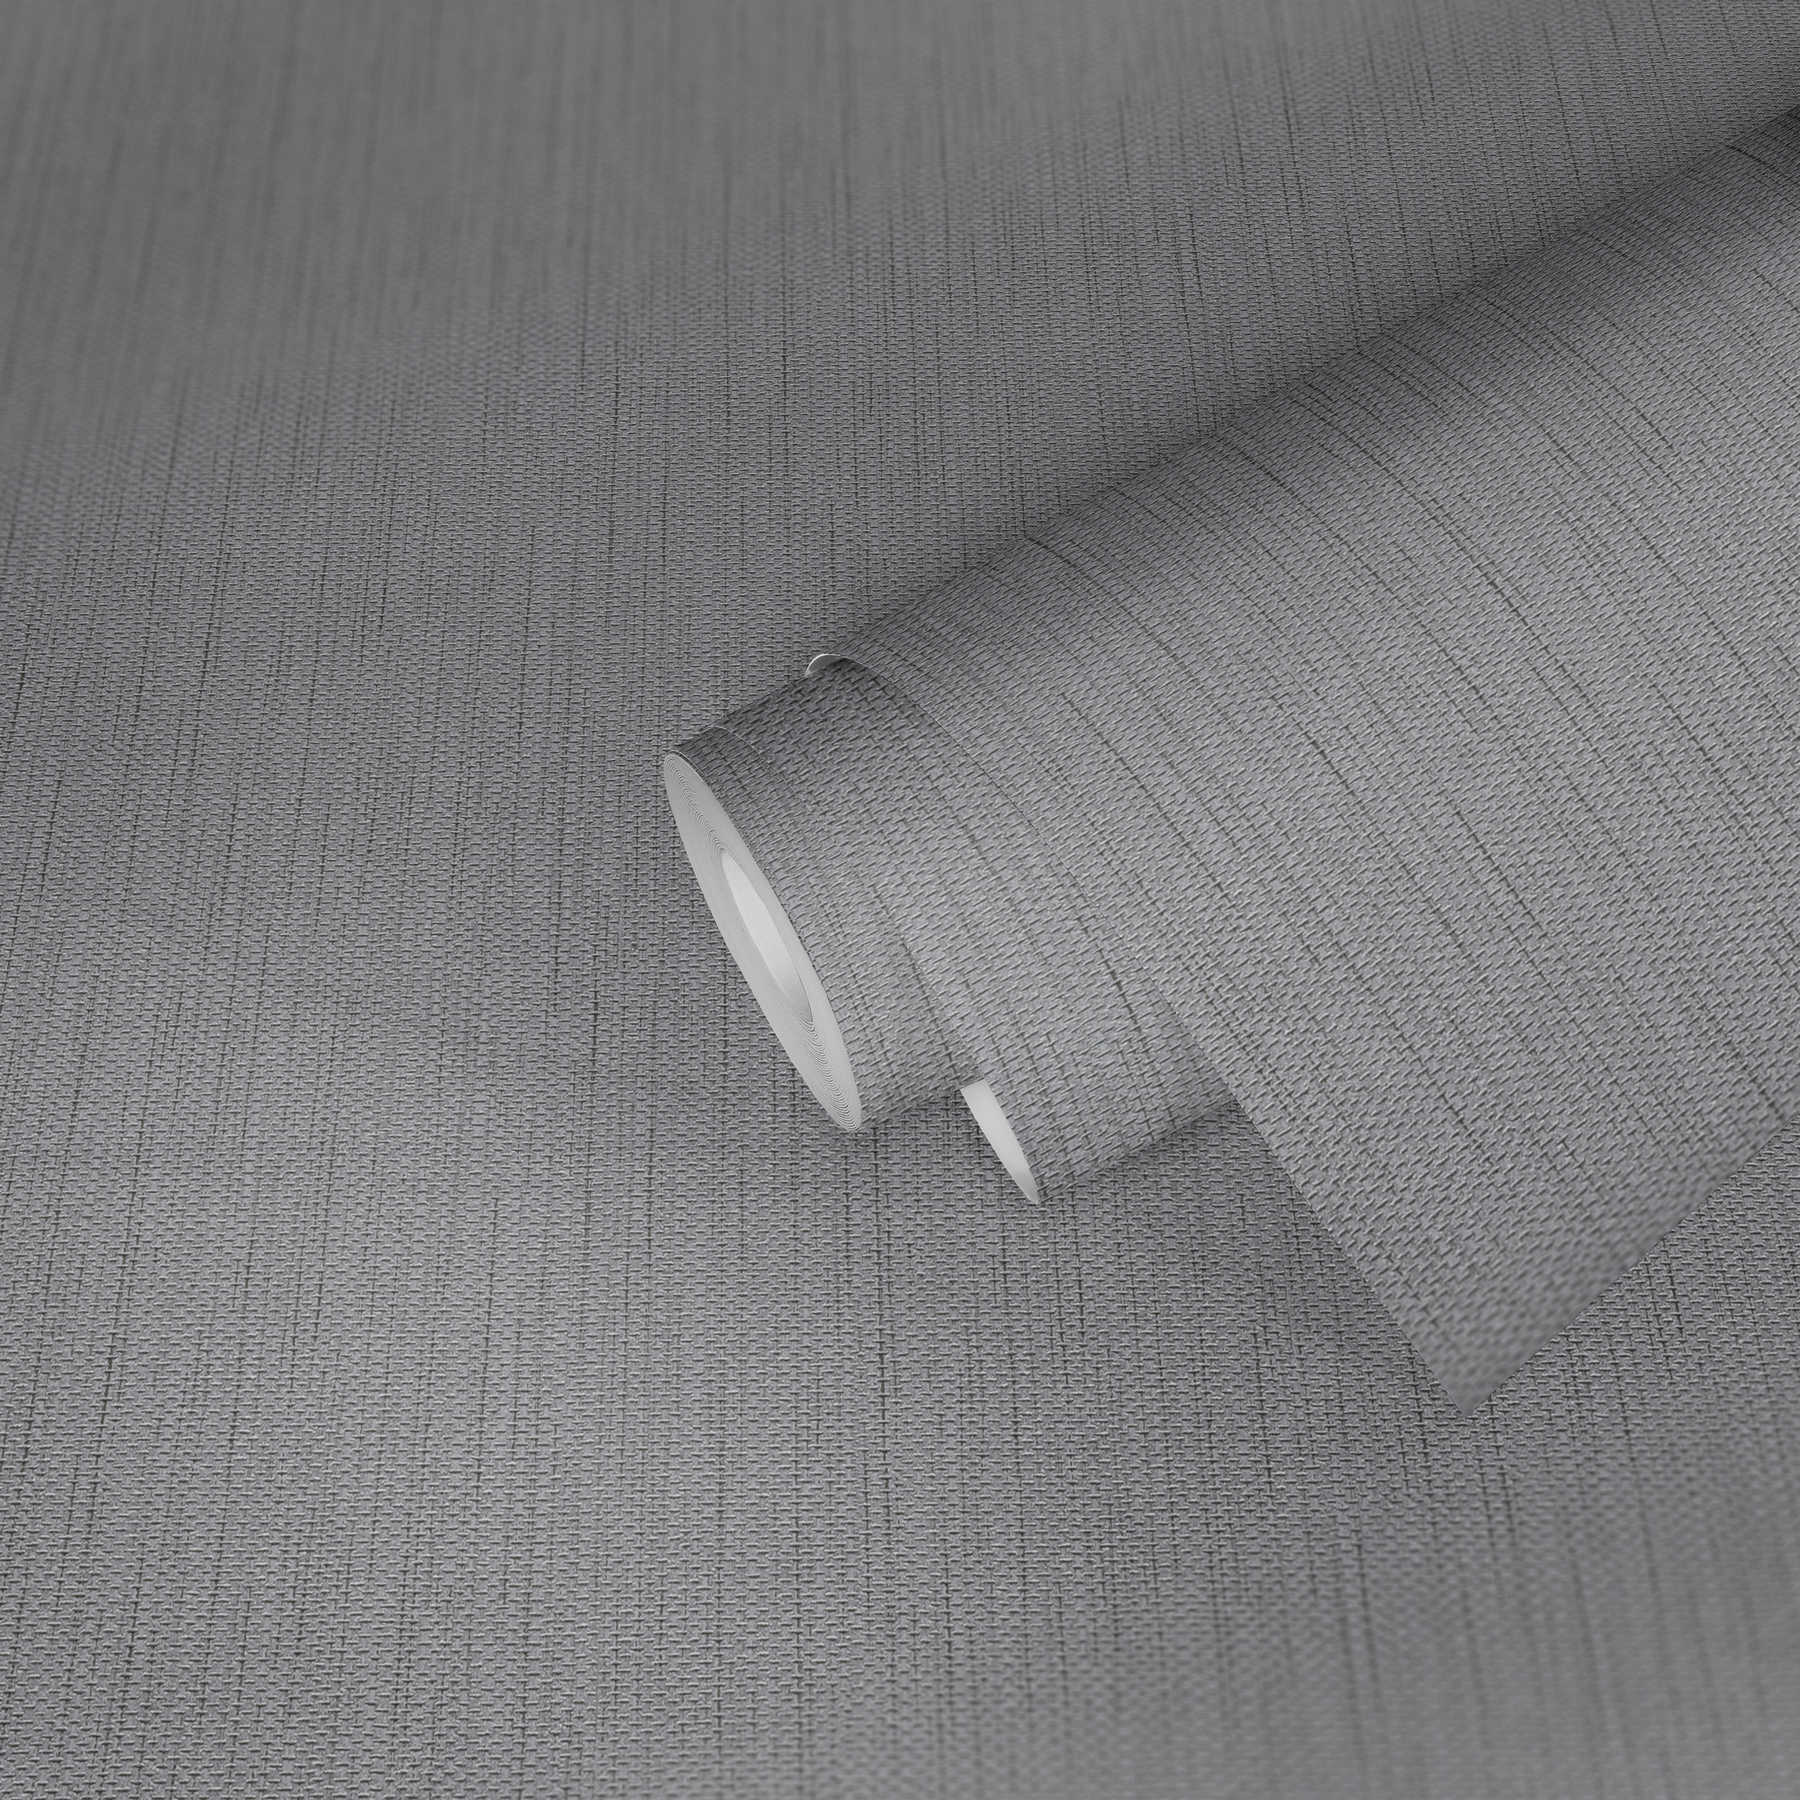             Carta da parati in tessuto non tessuto con struttura in lino - grigio
        